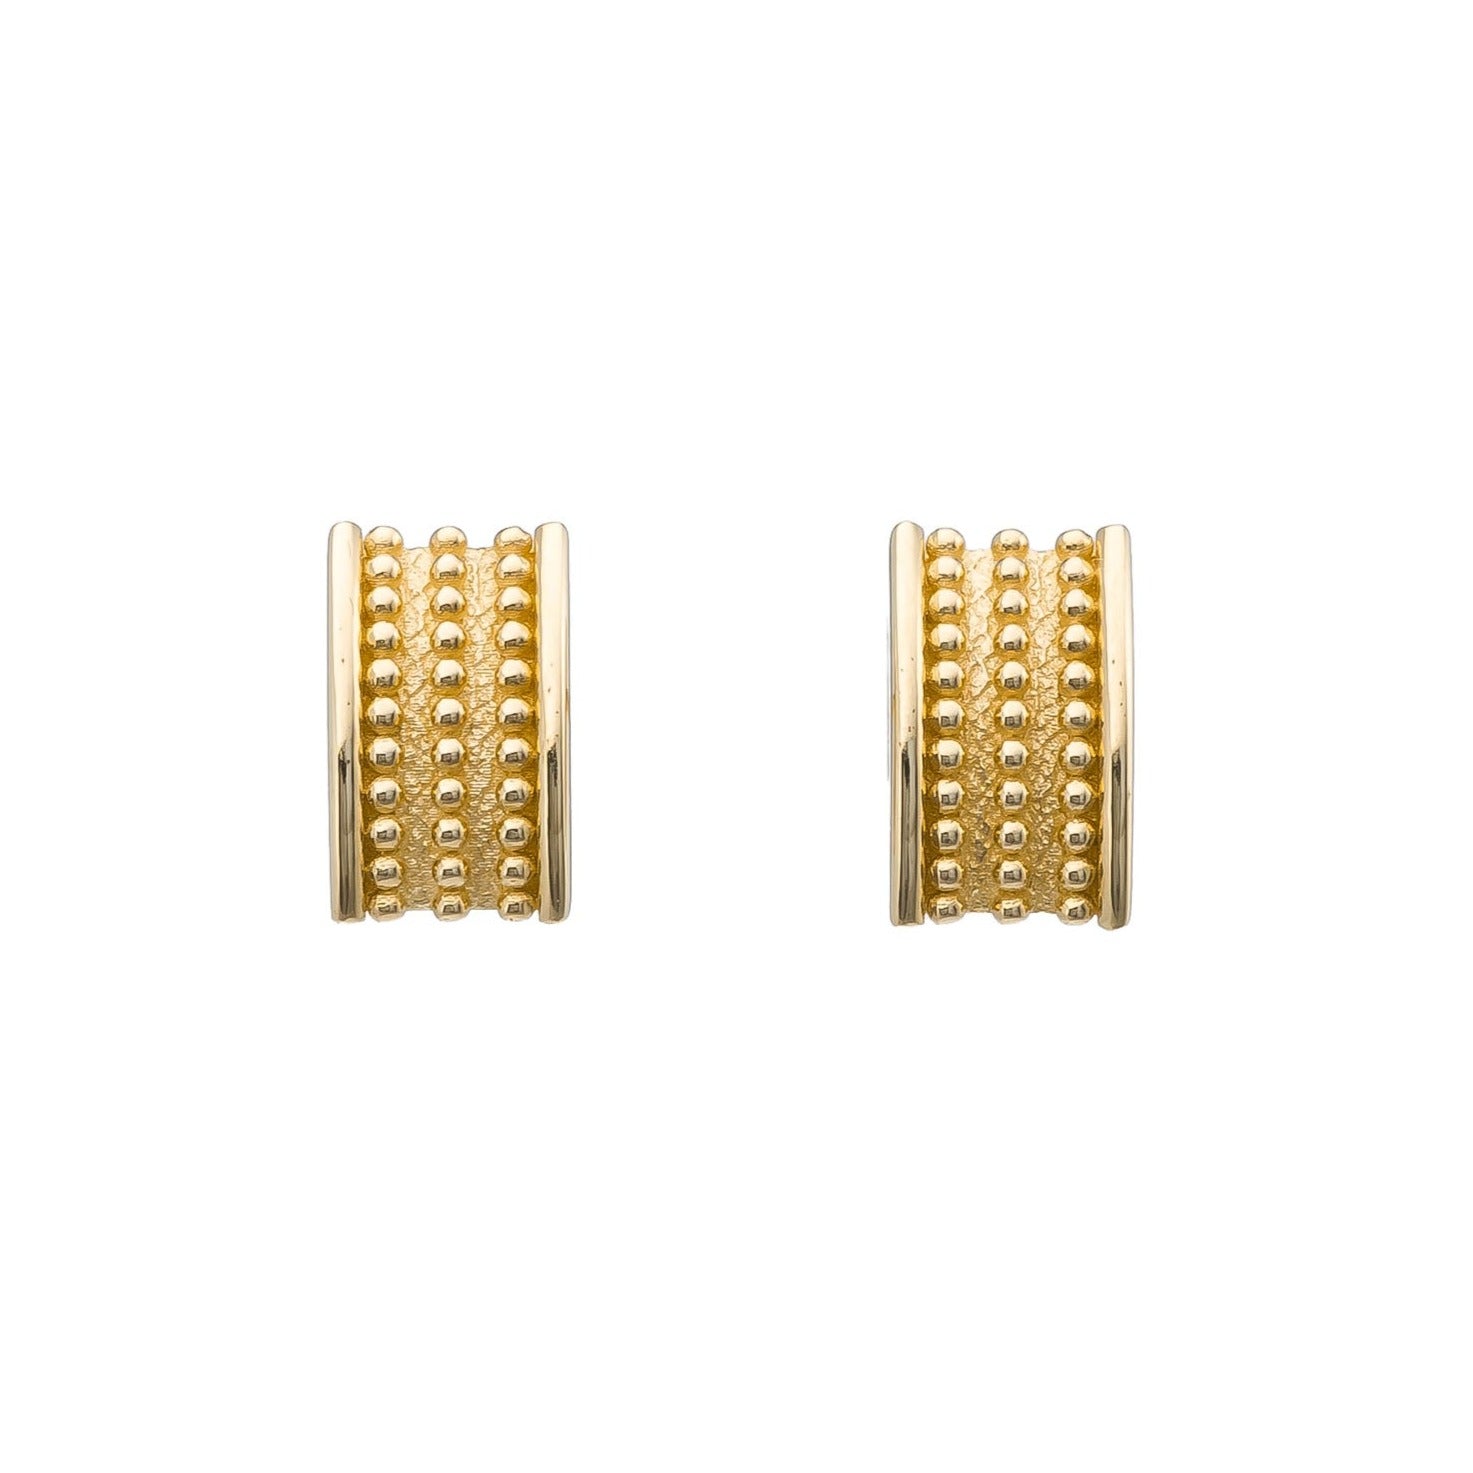 Granulation Gold Byzantine Earrings Odysseus Jewelry